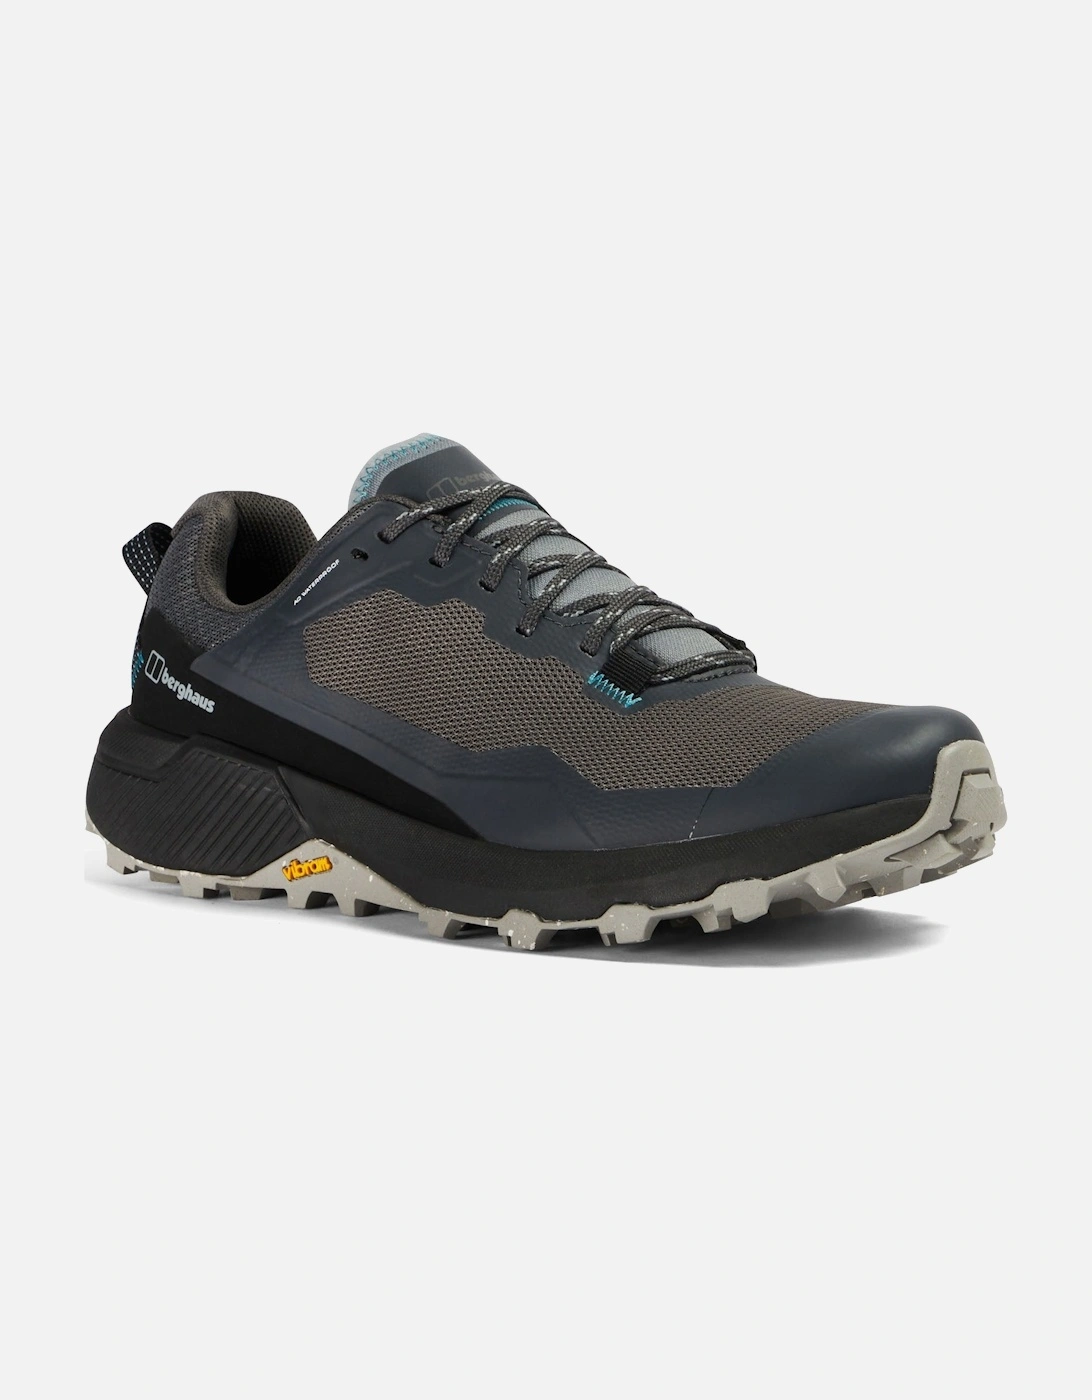 Womens Revolute Active Waterproof Walking Shoes - Black/Dark Grey, 7 of 6